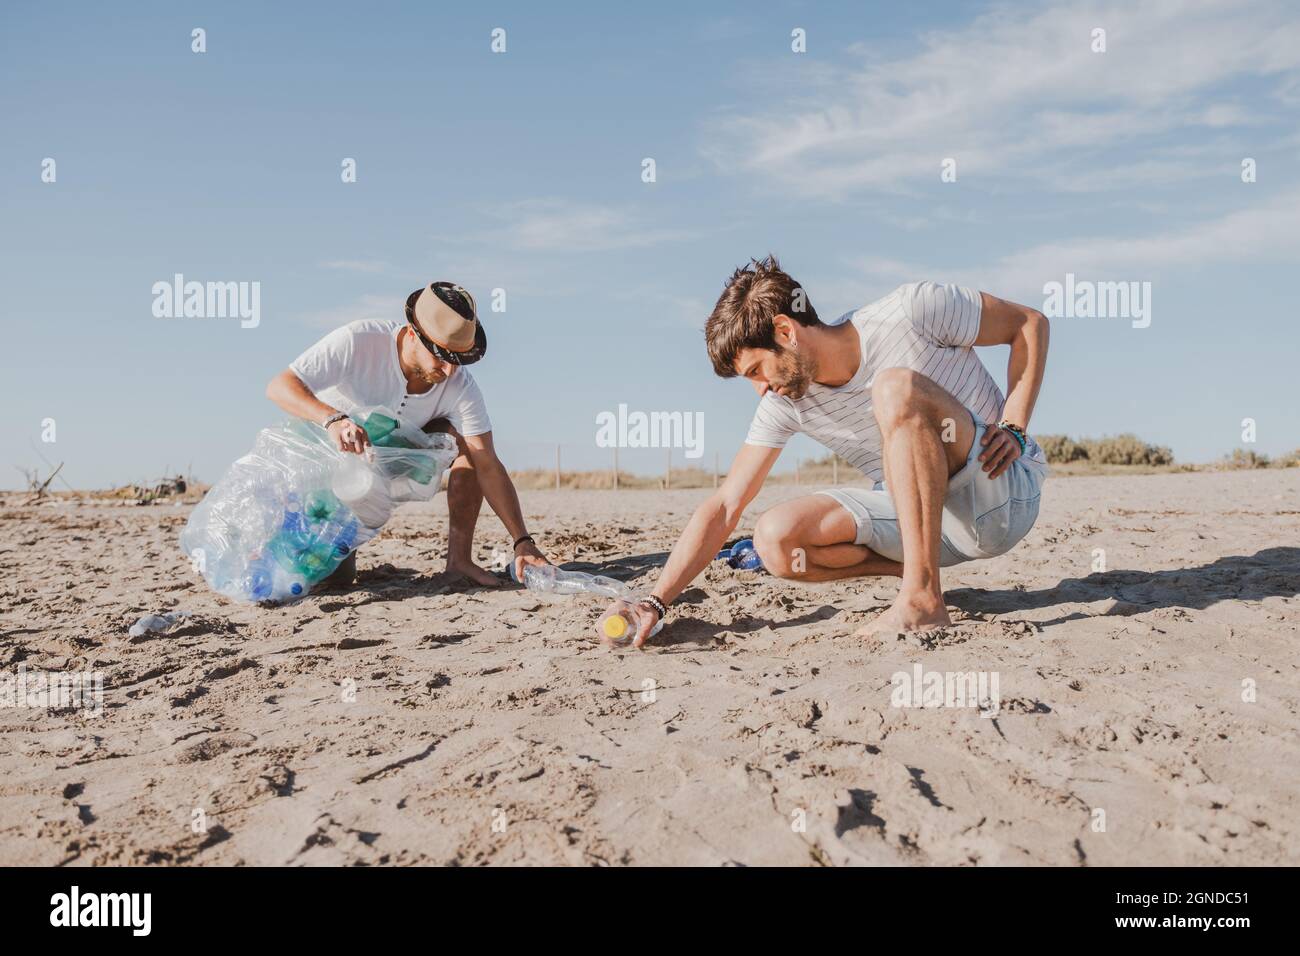 Groupe d'amis activistes collectant des déchets plastiques sur la plage. Les gens nettoyant la plage, avec des sacs. Concept de conservation de l'environnement et de l'océan Banque D'Images